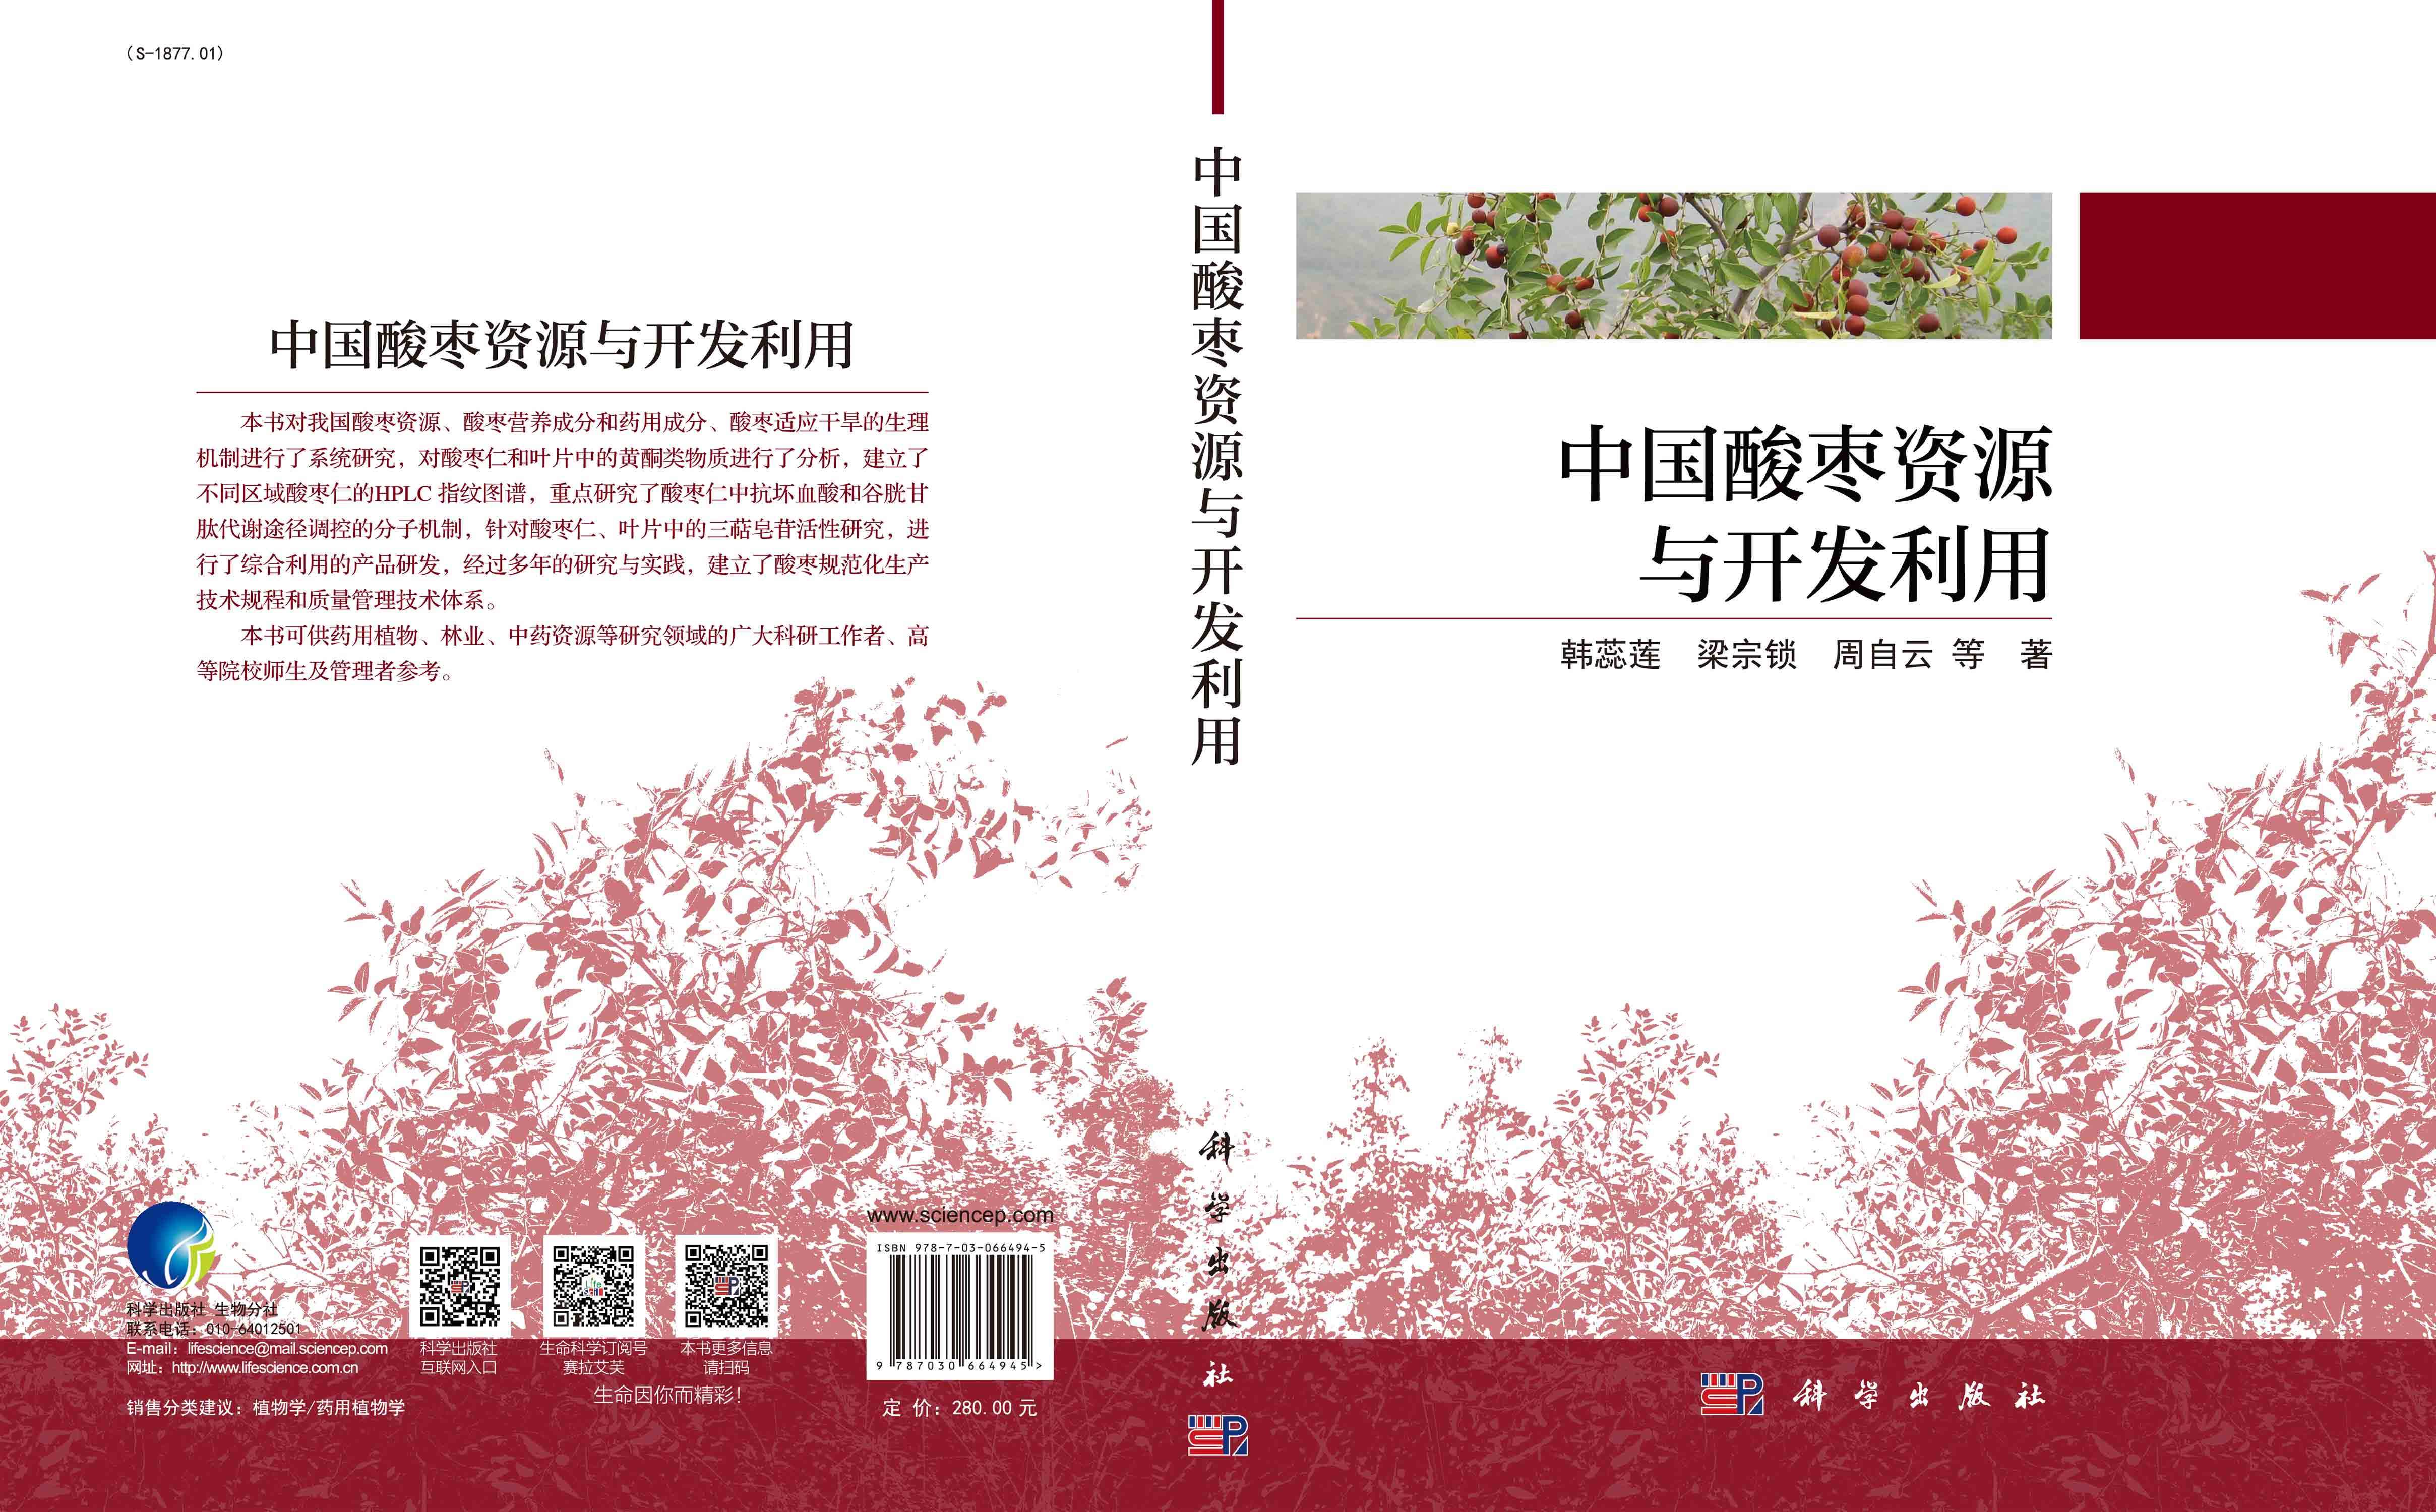 中国酸枣资源与开发利用